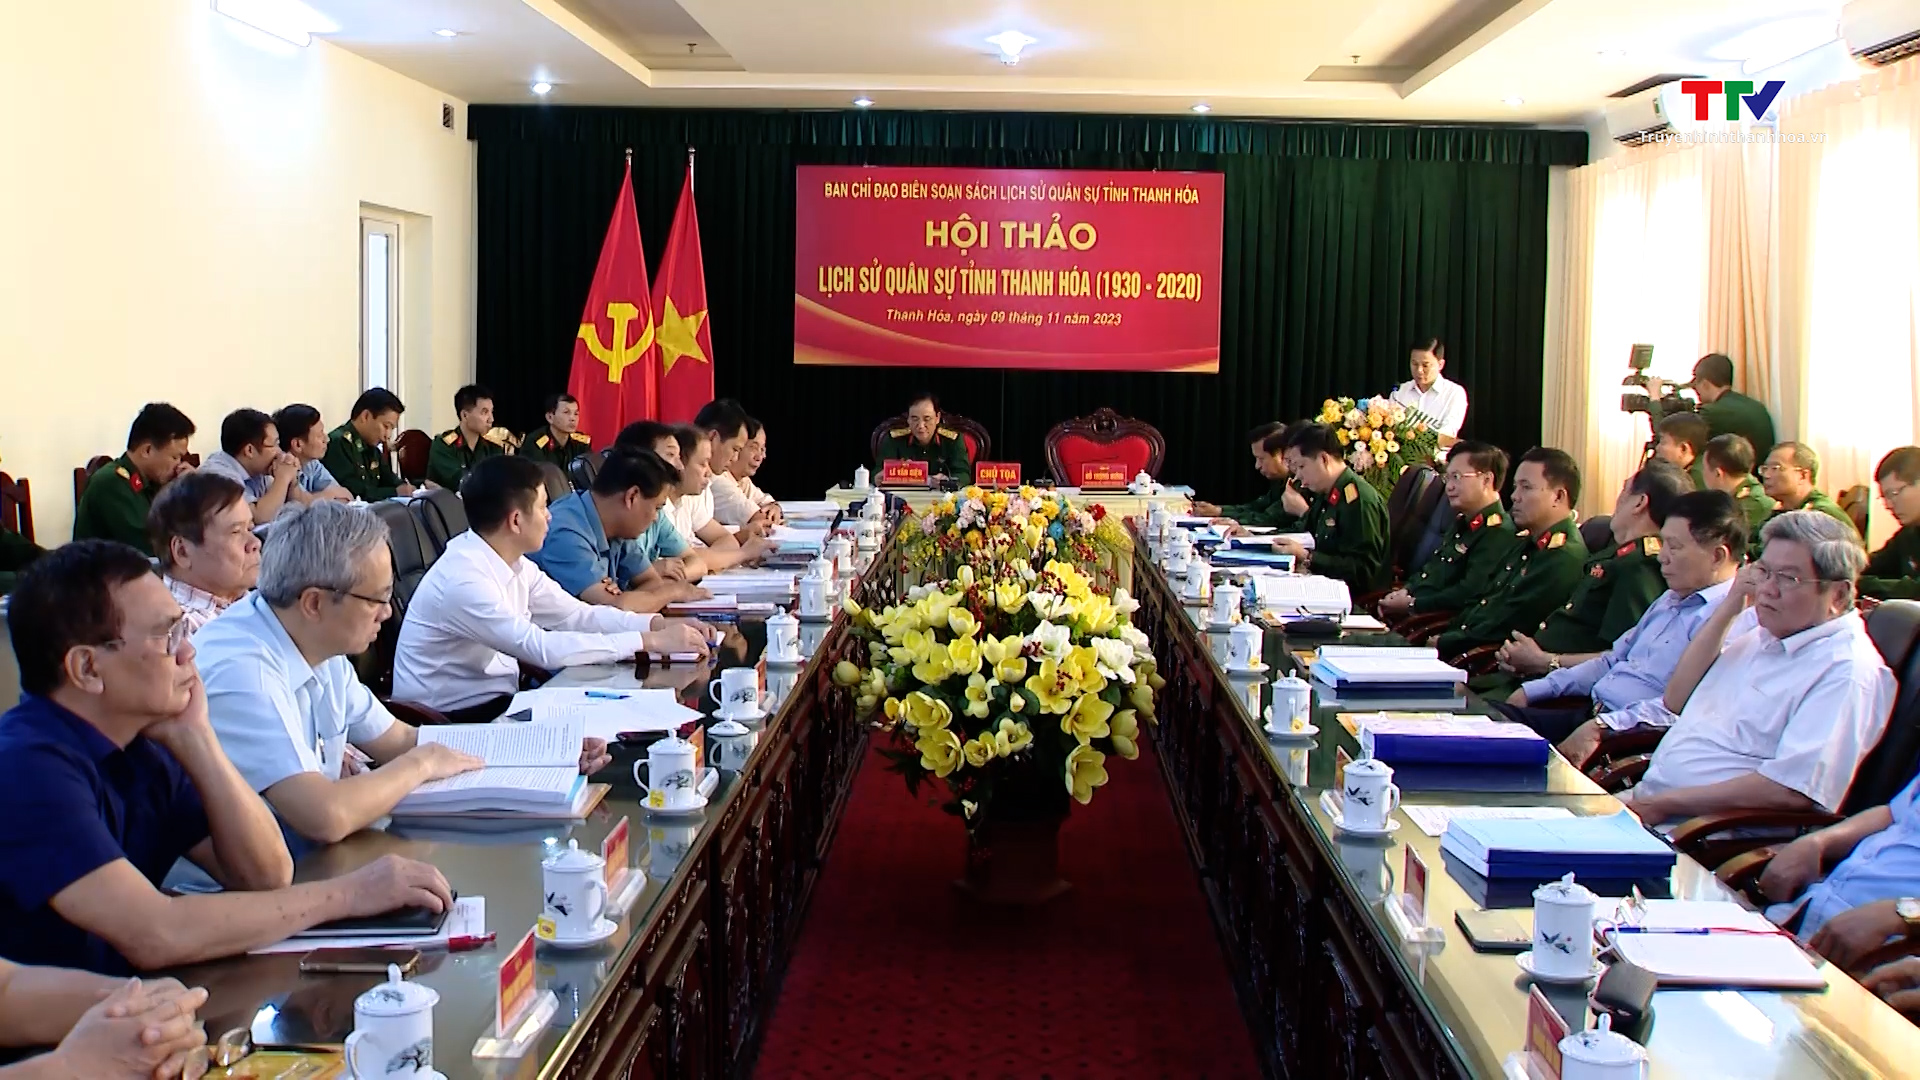 Hội thảo Lịch sử Quân sự tỉnh Thanh Hóa (1930 - 2020) - Ảnh 2.